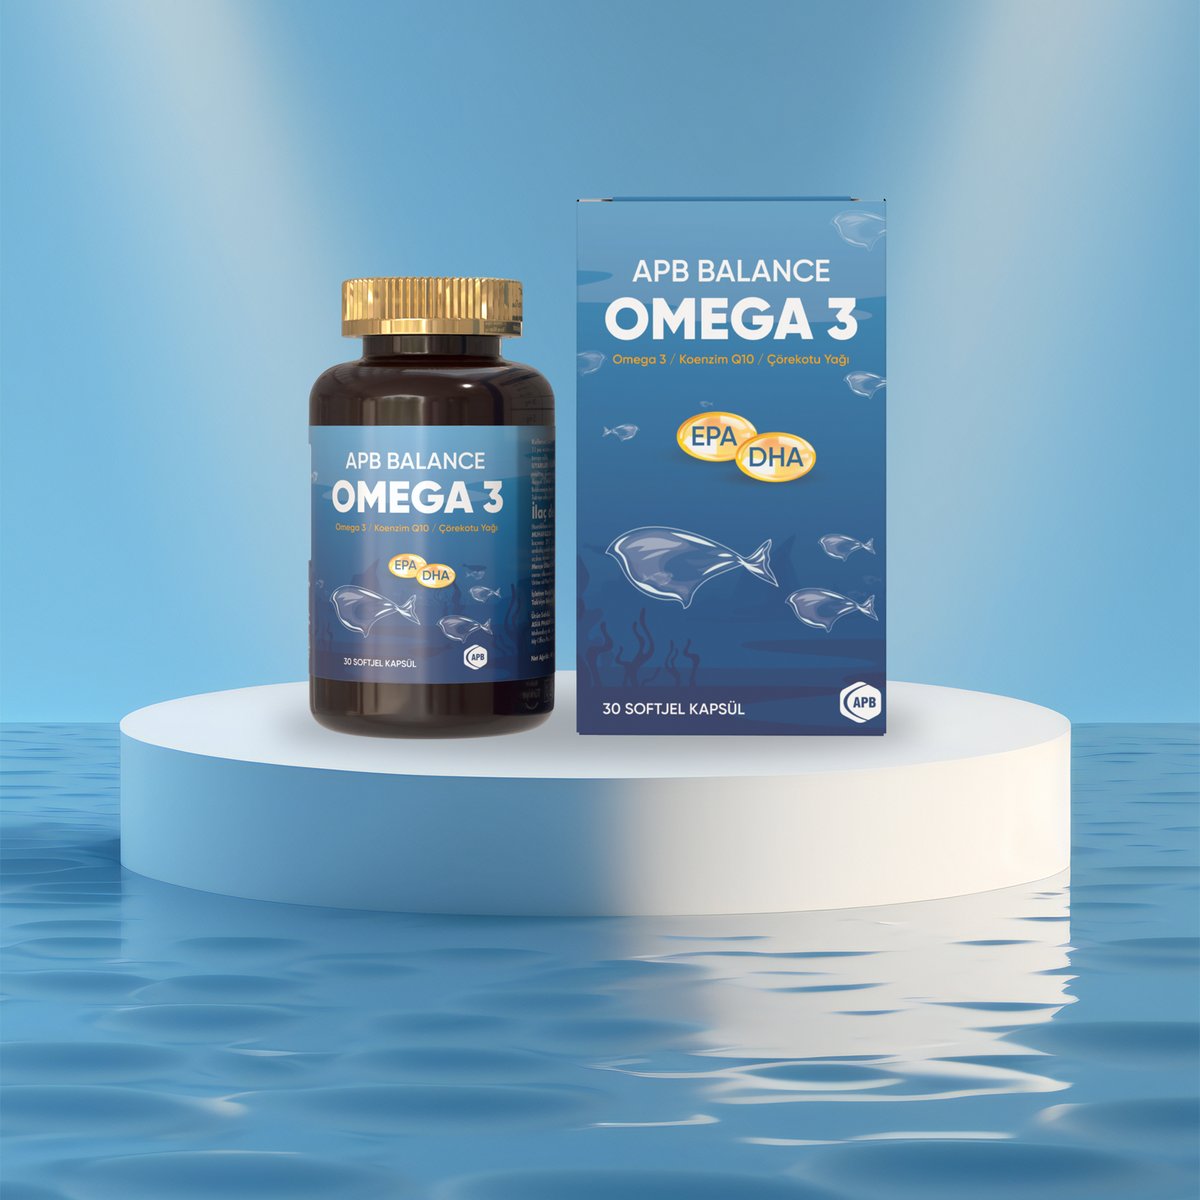 APB Balance’ın Omega 3 takviyesi ile sağlığınızı koruyun!

Balık yağı, çörek otu yağı ve koenzim Q10 içeriğiyle vücut sağlığınızı korumanıza katkıda bulunur. ++
 
#omega3 #balıkyağı #çörekotuyağı #bağışıklık #besintakviyesi #gıdatakviyesi #vitamind #apbbalance #asiapharm